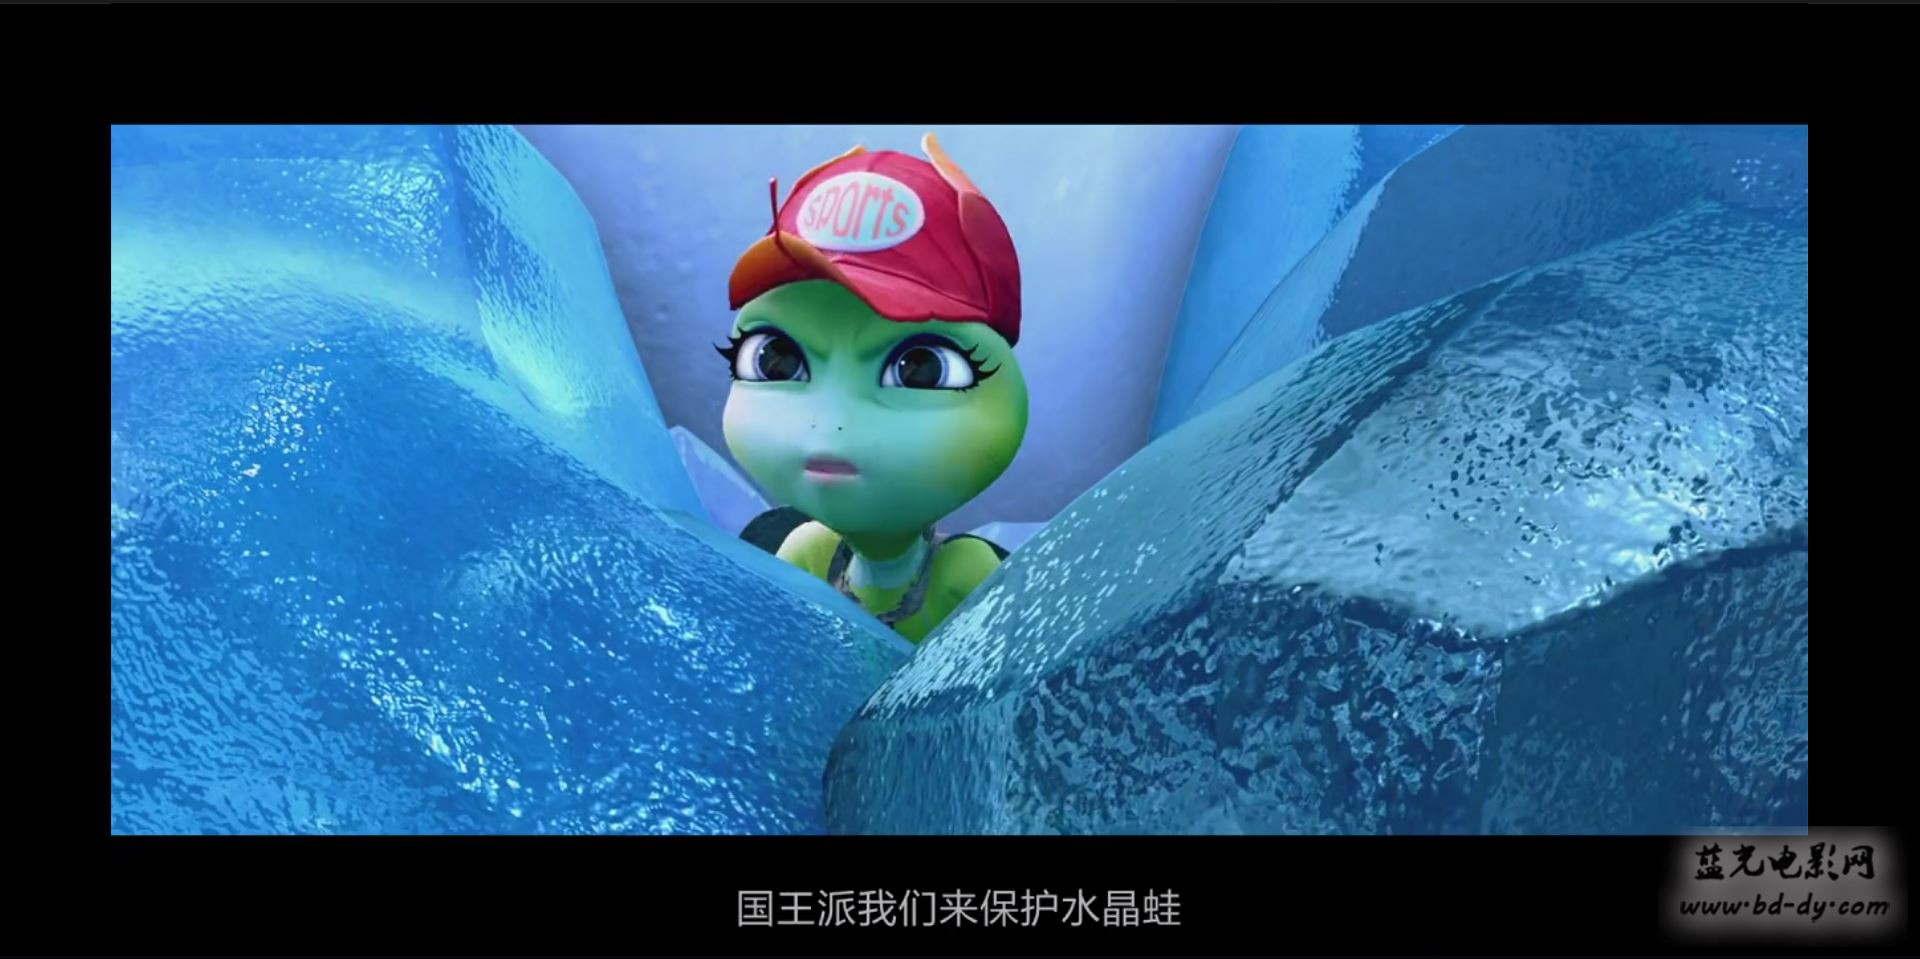 《青蛙王国之冰冻大冒险》2015国产动画冒险.HD720P.国语中字截图;jsessionid=peXT1RqiiwciidTm5oAcAB6baSWq2cW4z1ItiQoF